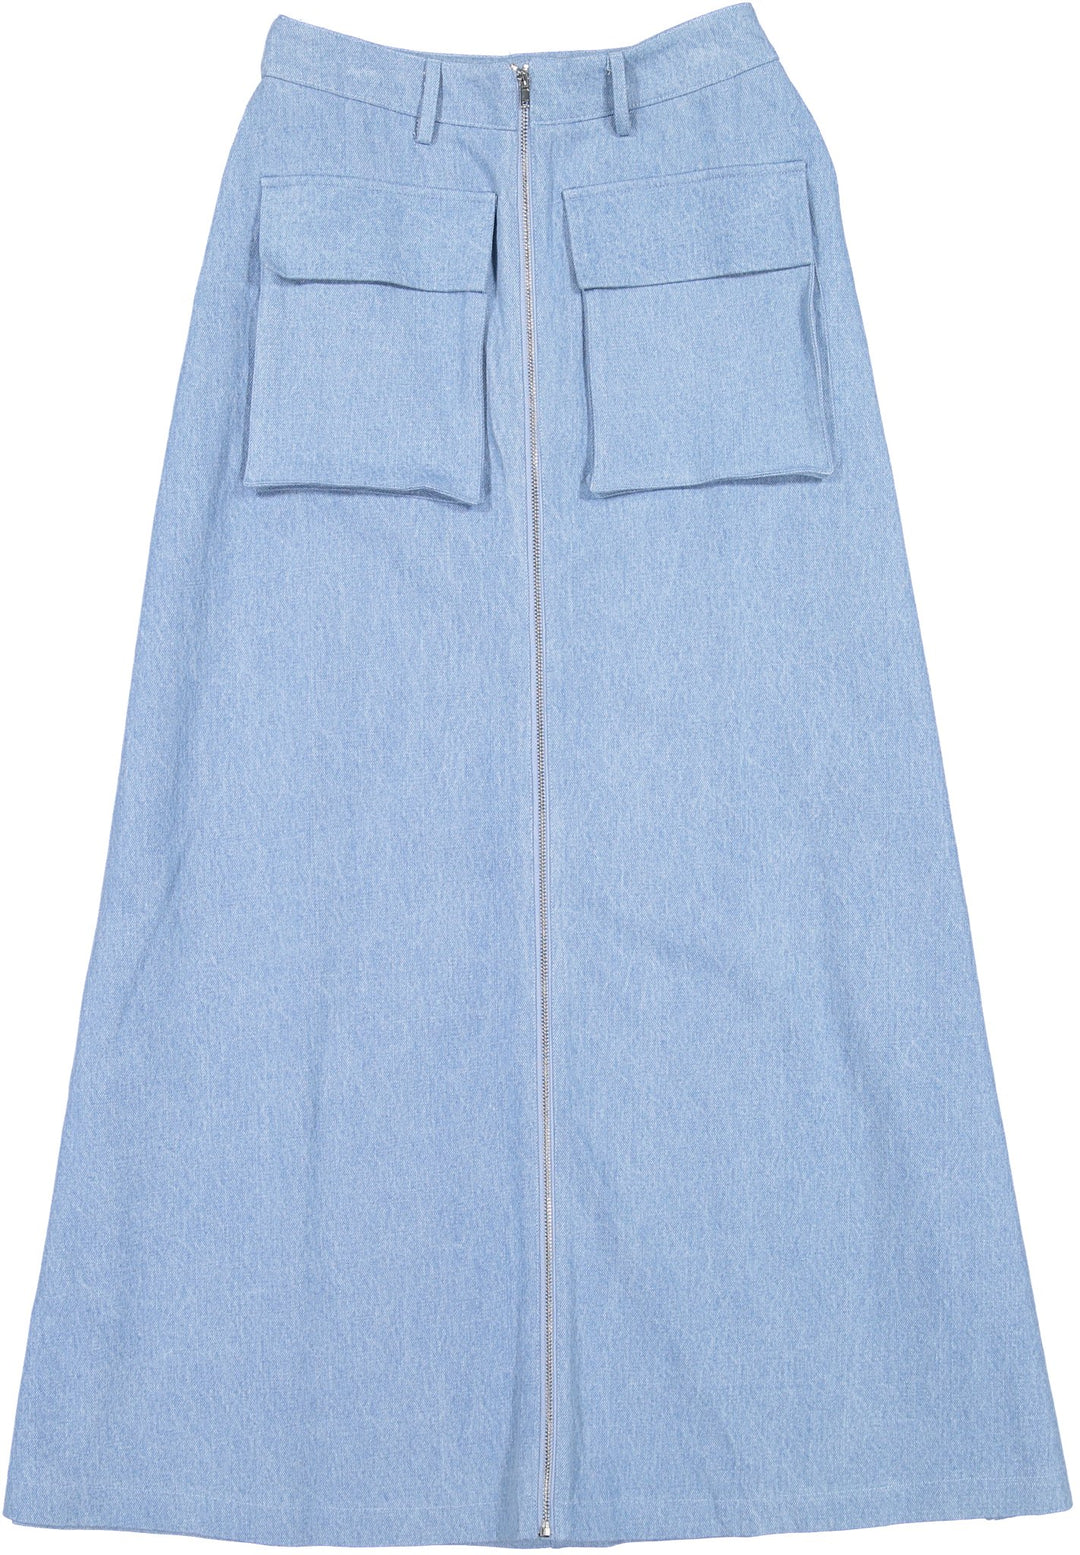 Denim Pocket Maxi Skirt - Light Wash - Posh New York